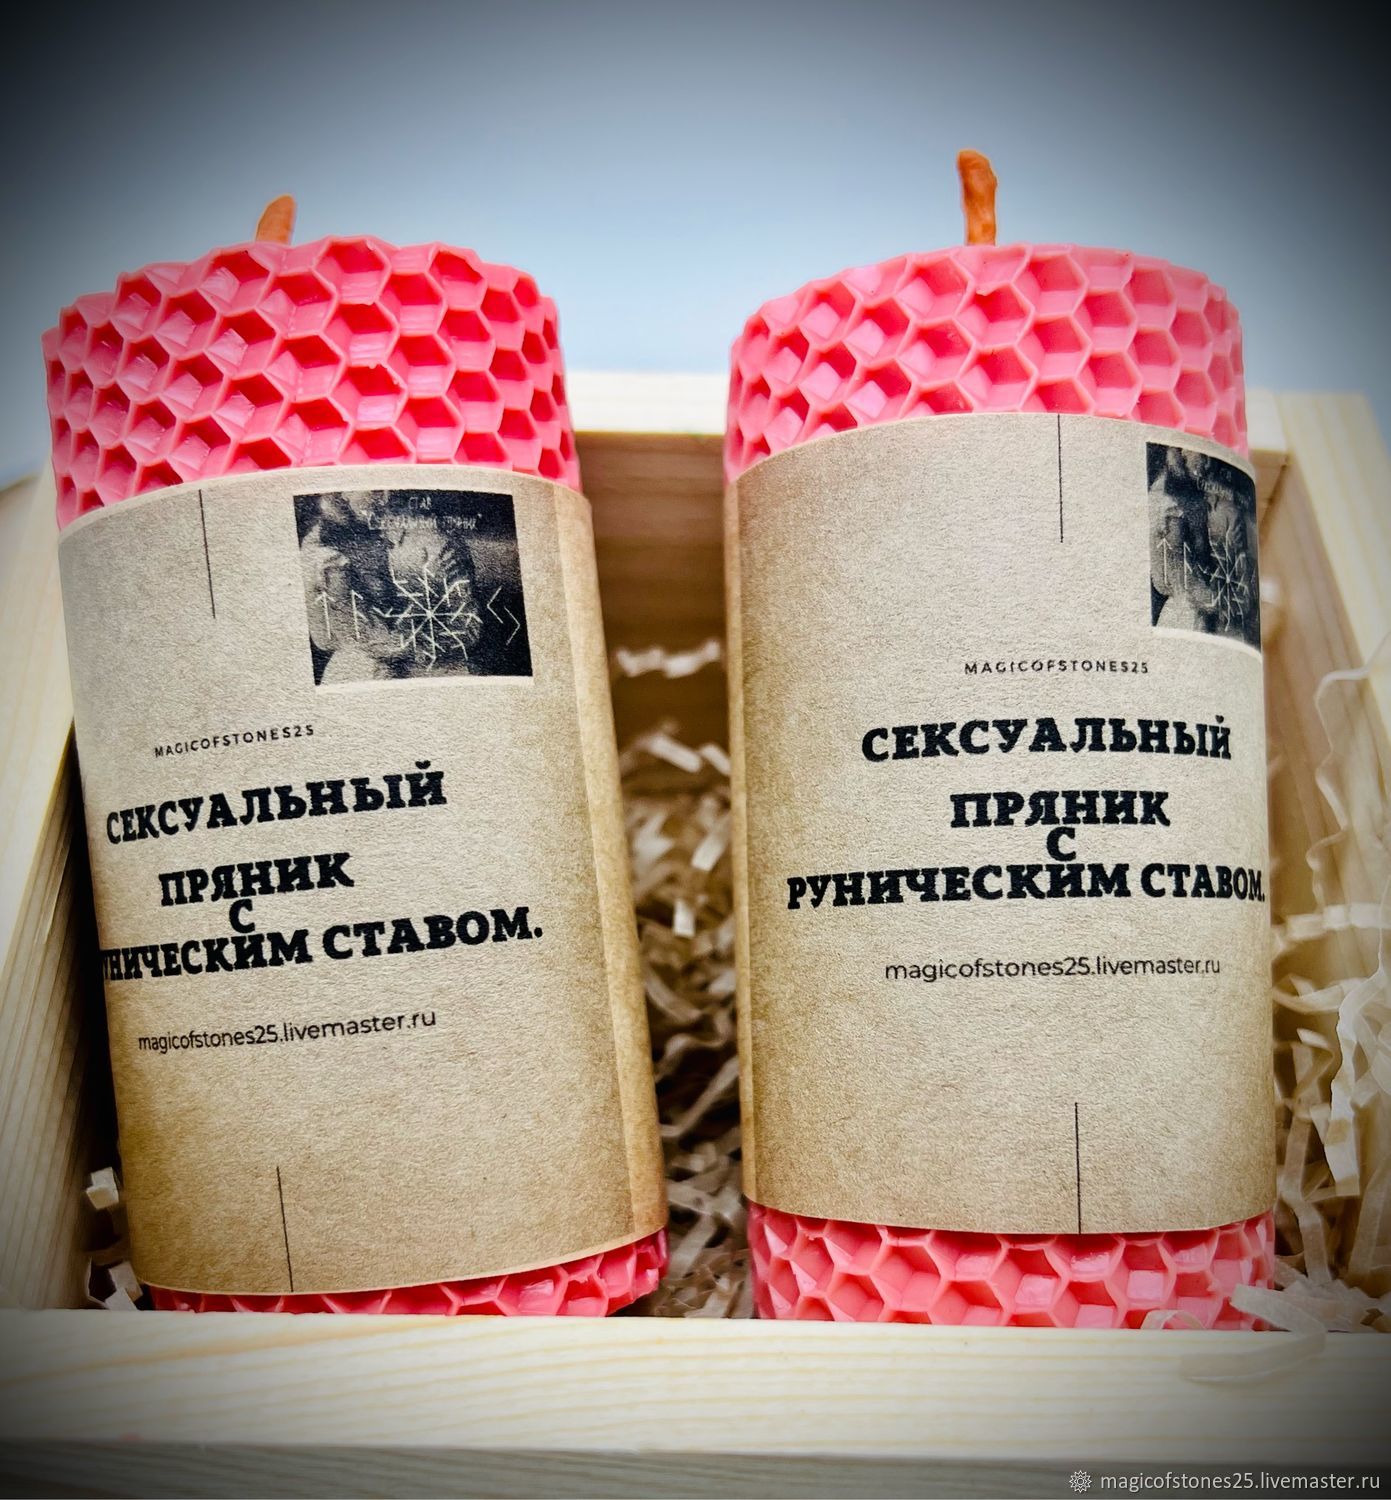 Сувениры и подарки (пряник расписной) – купить изделия ручной работы в магазине riosalon.ru